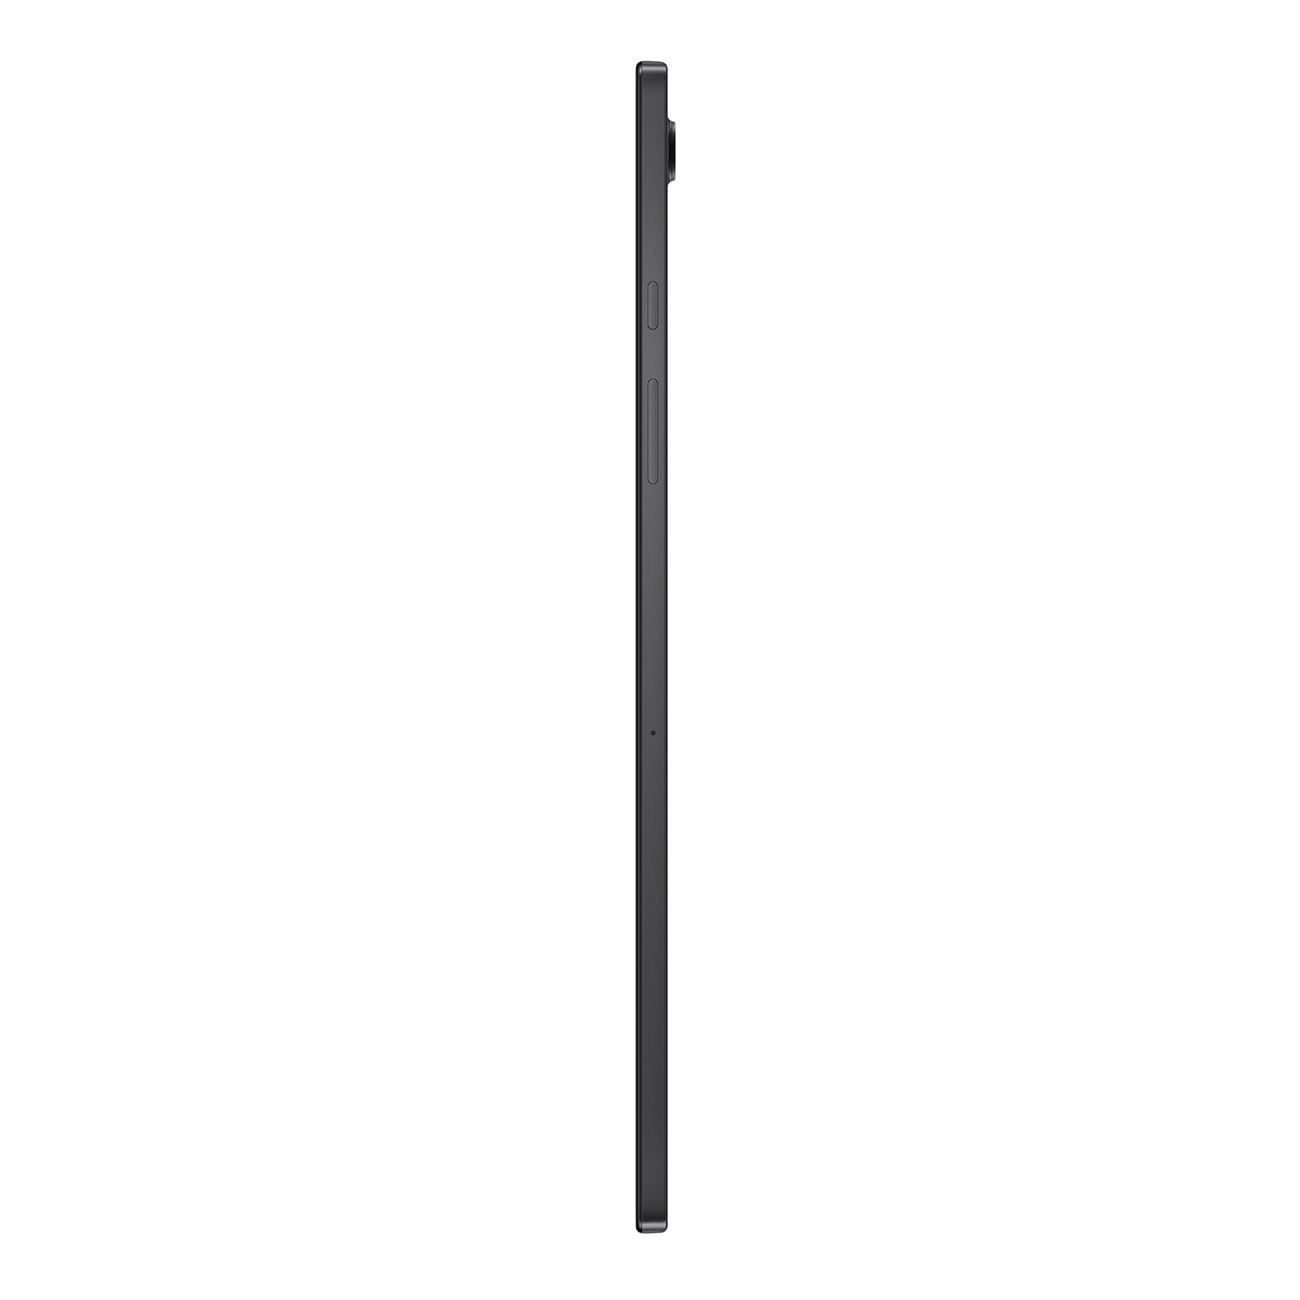 SAMSUNG Galaxy Tab Zoll, A8, grau 10,5 GB, 32 Tablet